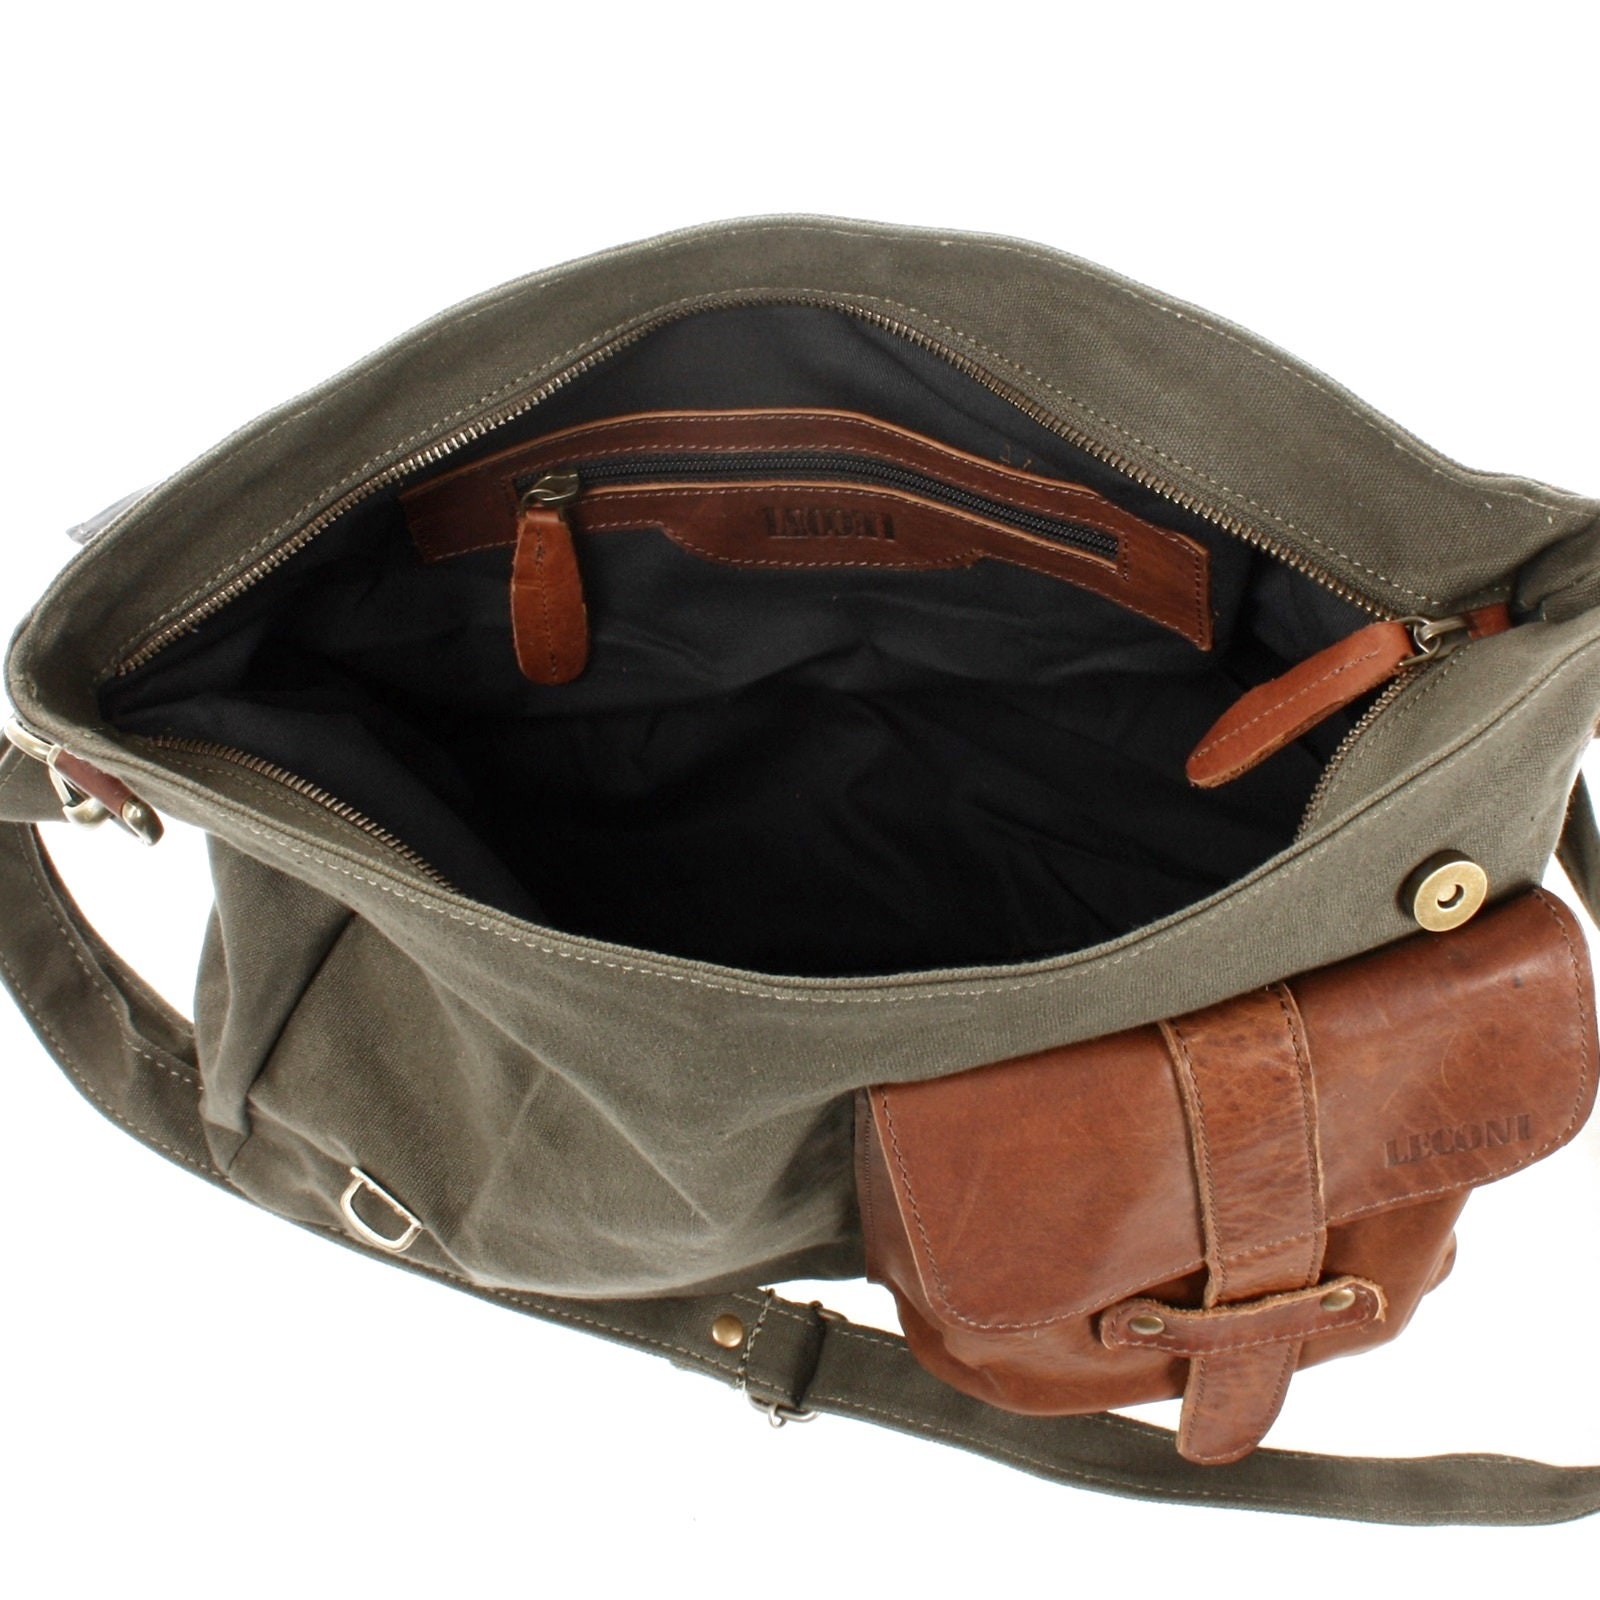 LECONI Messenger Bag College Bag DIN A4 Courier Bag Leather - Etsy